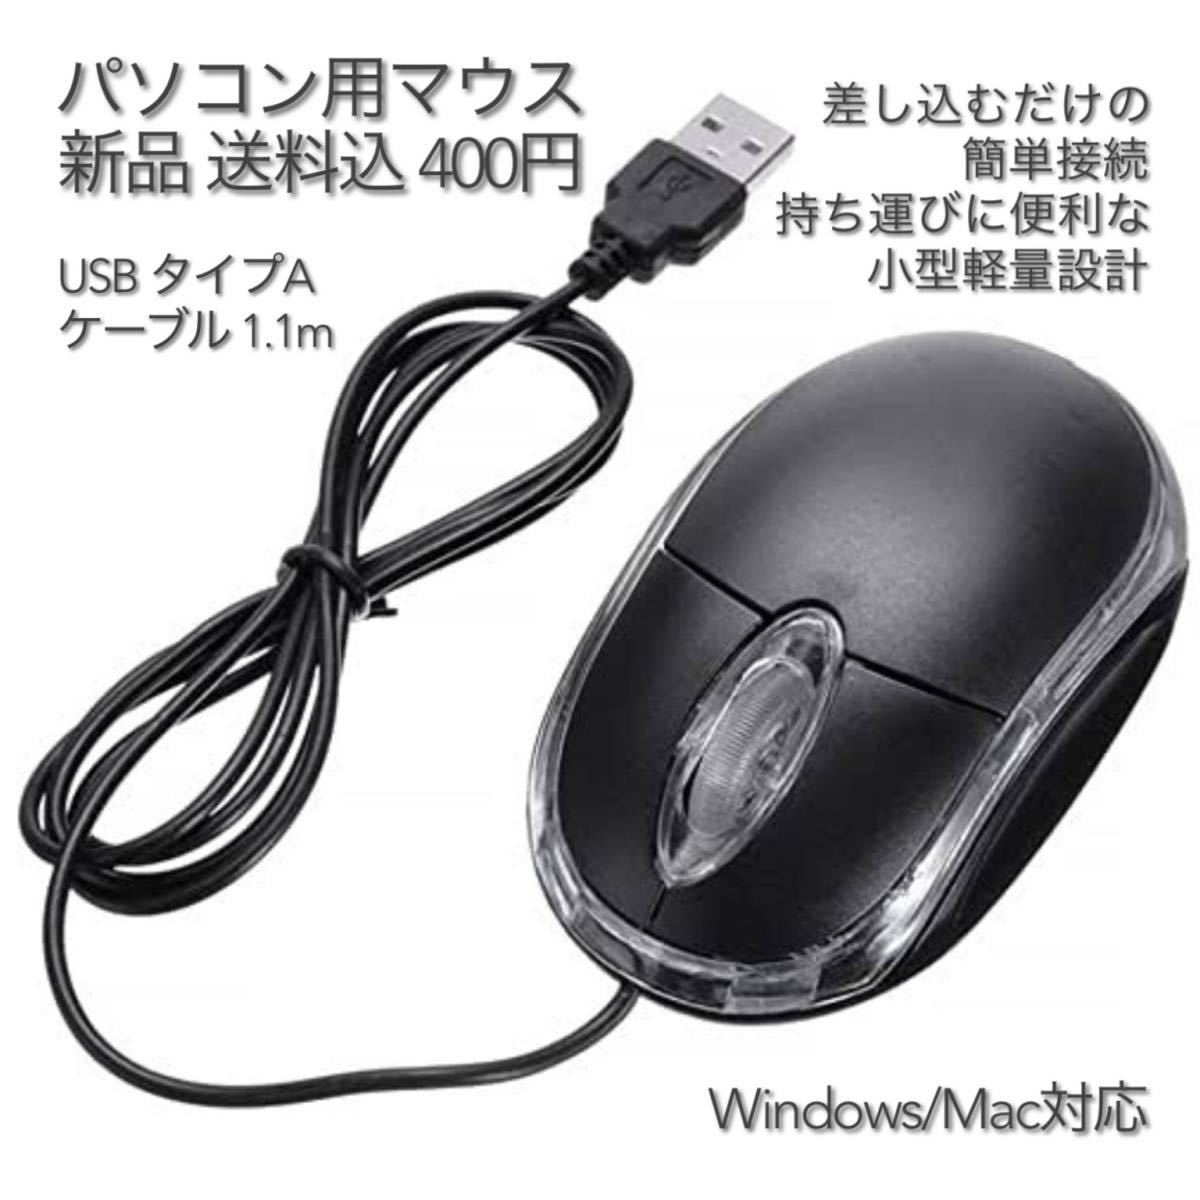 パソコン用マウス USB タイプA ケーブル 1.1m #2 有線 光学式 USB Mouse 在宅勤務 テレワーク リモートワーク 遠隔授業 リモート授業_画像1